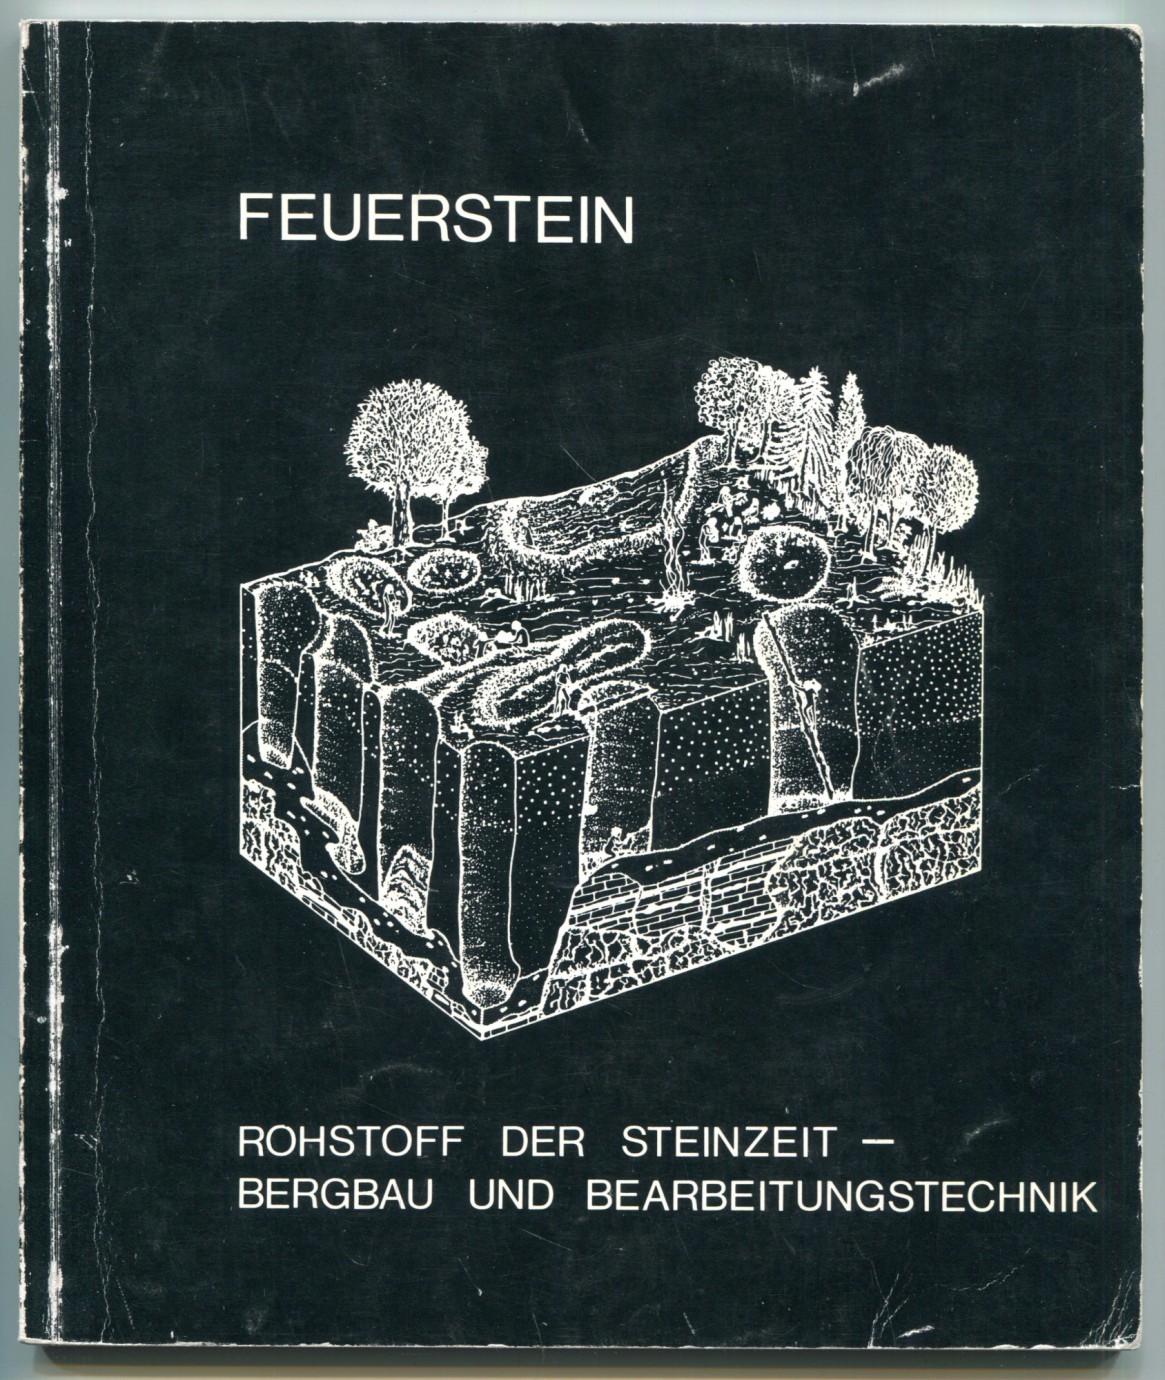 Feuerstein: Rohstoff der Steinzeit - Bergbau und Bearbeitungstechnik [= Archäologisches Museum der Stadt Kelheim, Museumsheft 3, 1987] - Rind, Michael M. (ed.)